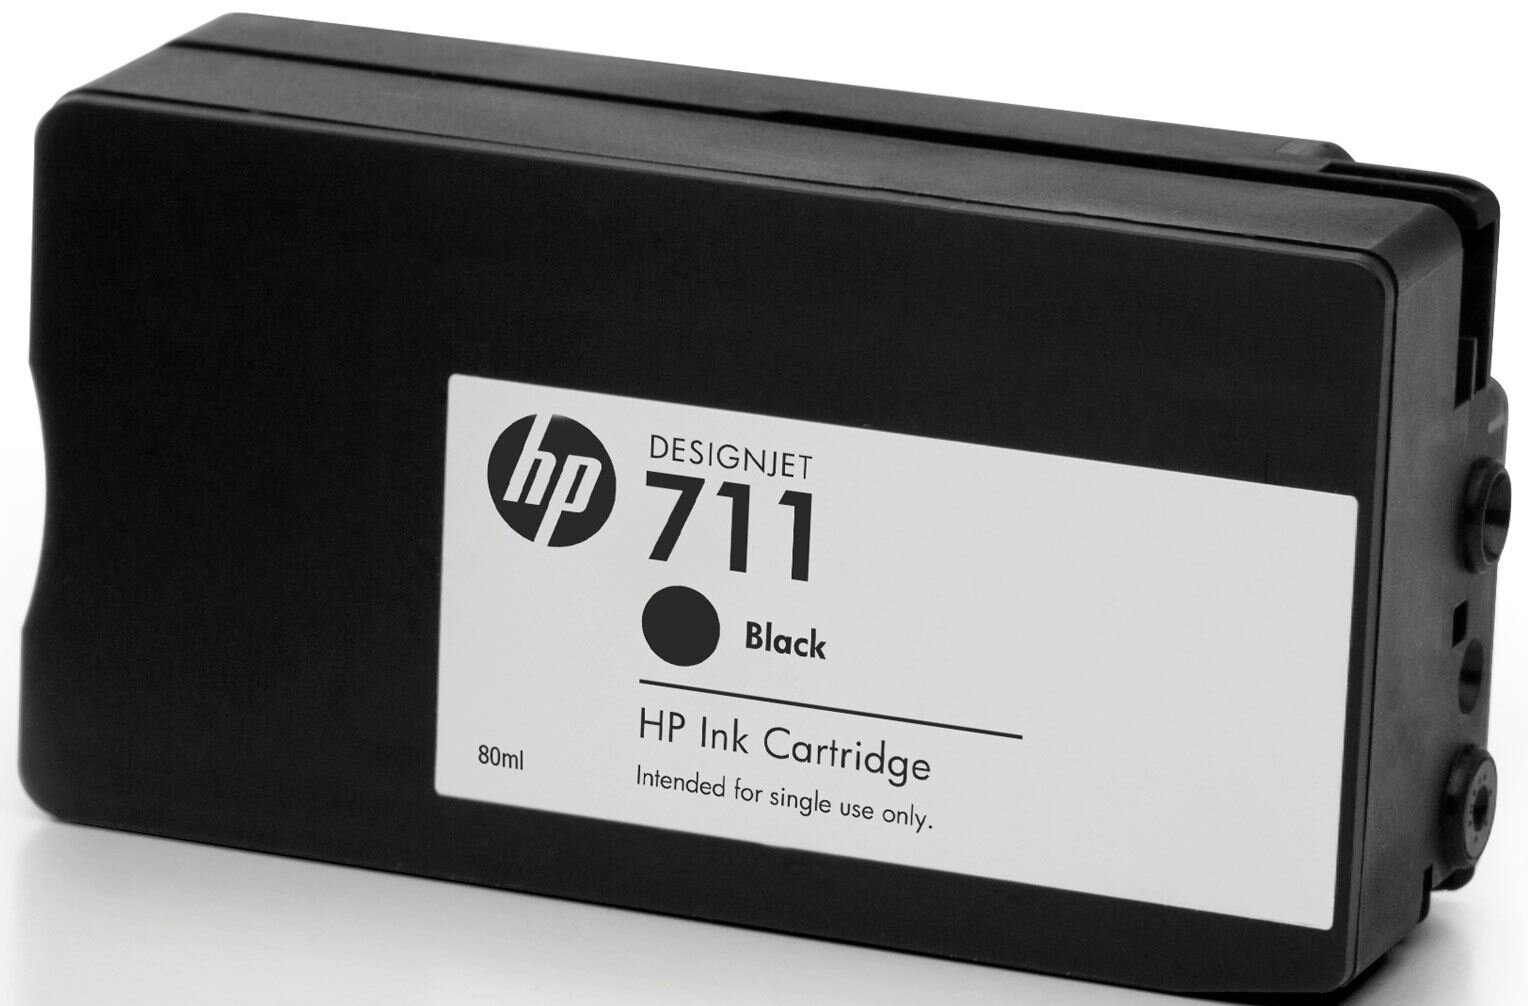 Картридж для струйного принтера HP - фото №13